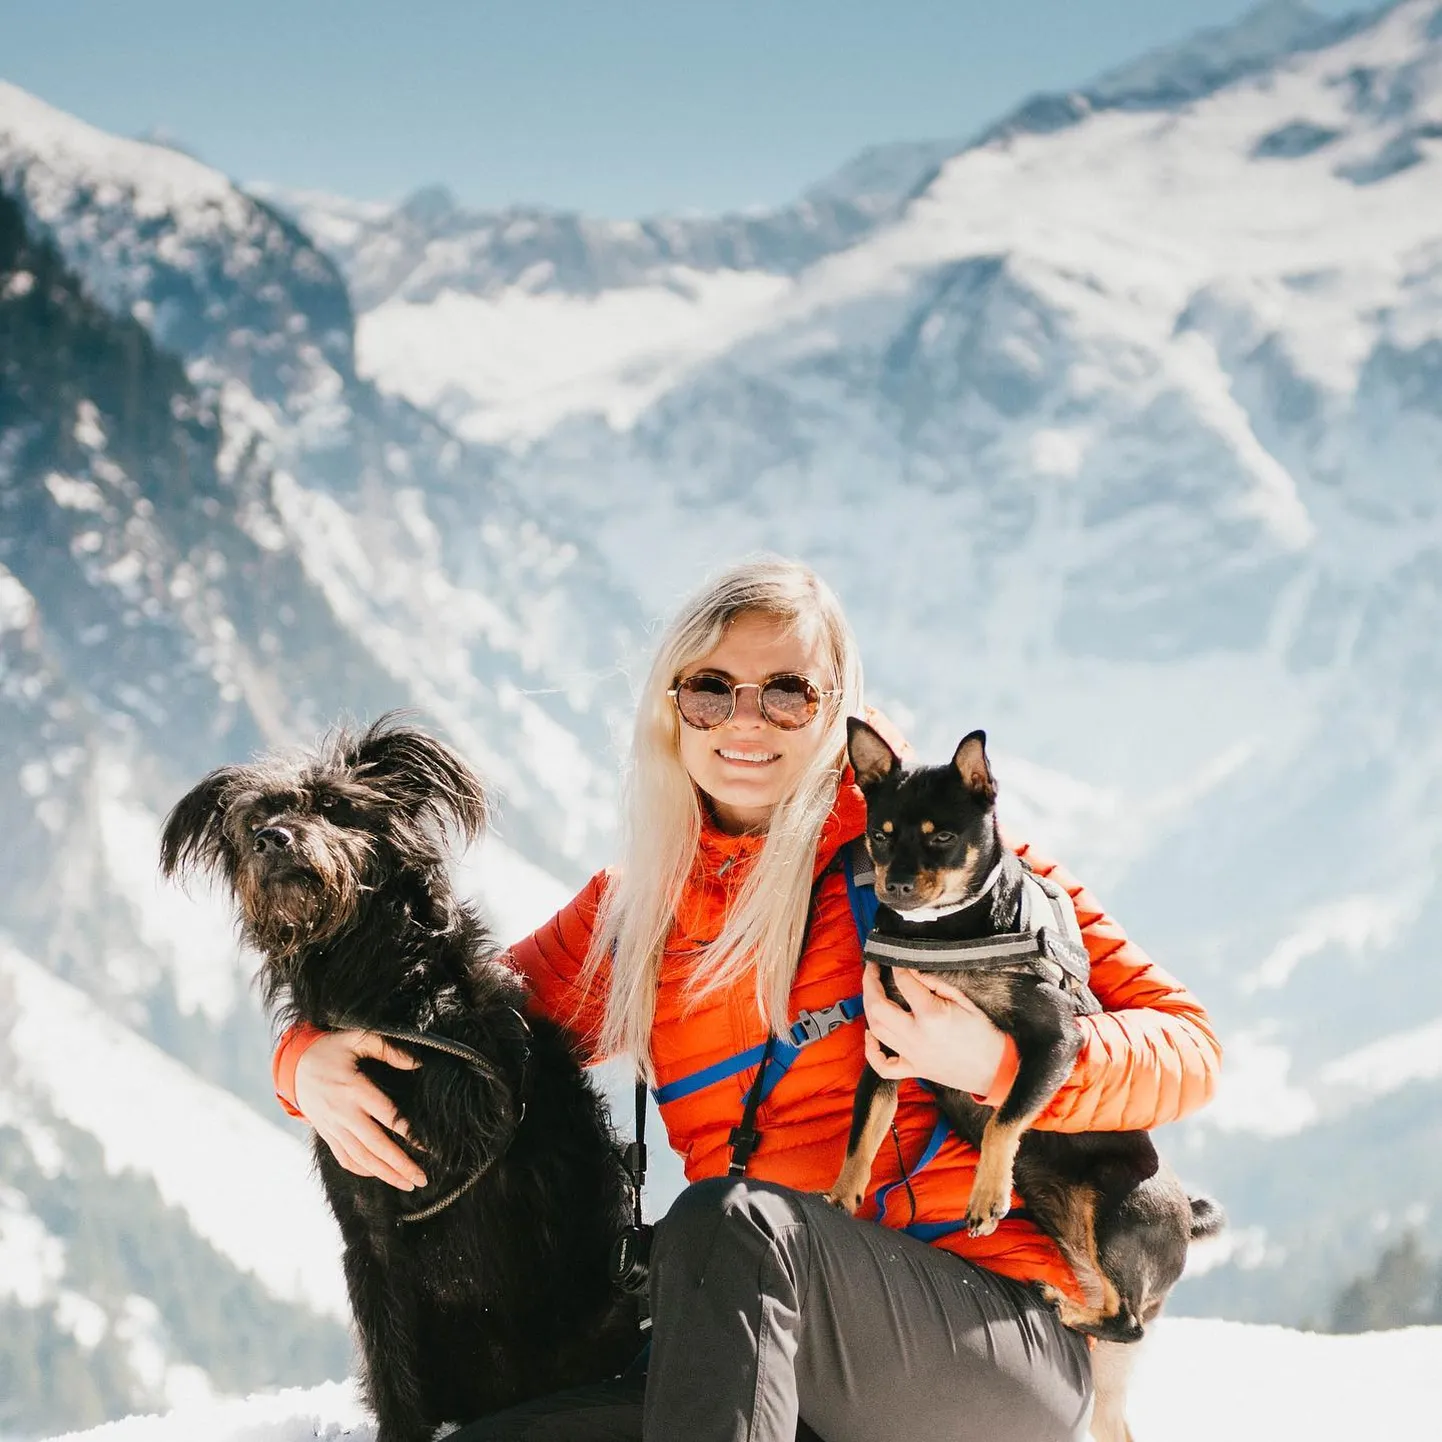 Kelli Rääbis mägedes Jüri ja Austria naabrinaise koera Kikiga. Kiki omanik on vanem naisterahvas, kes koeraga palju liikuda ei saa, seega võtavad Kelli ja Jüri ta endaga matkale kaasa.